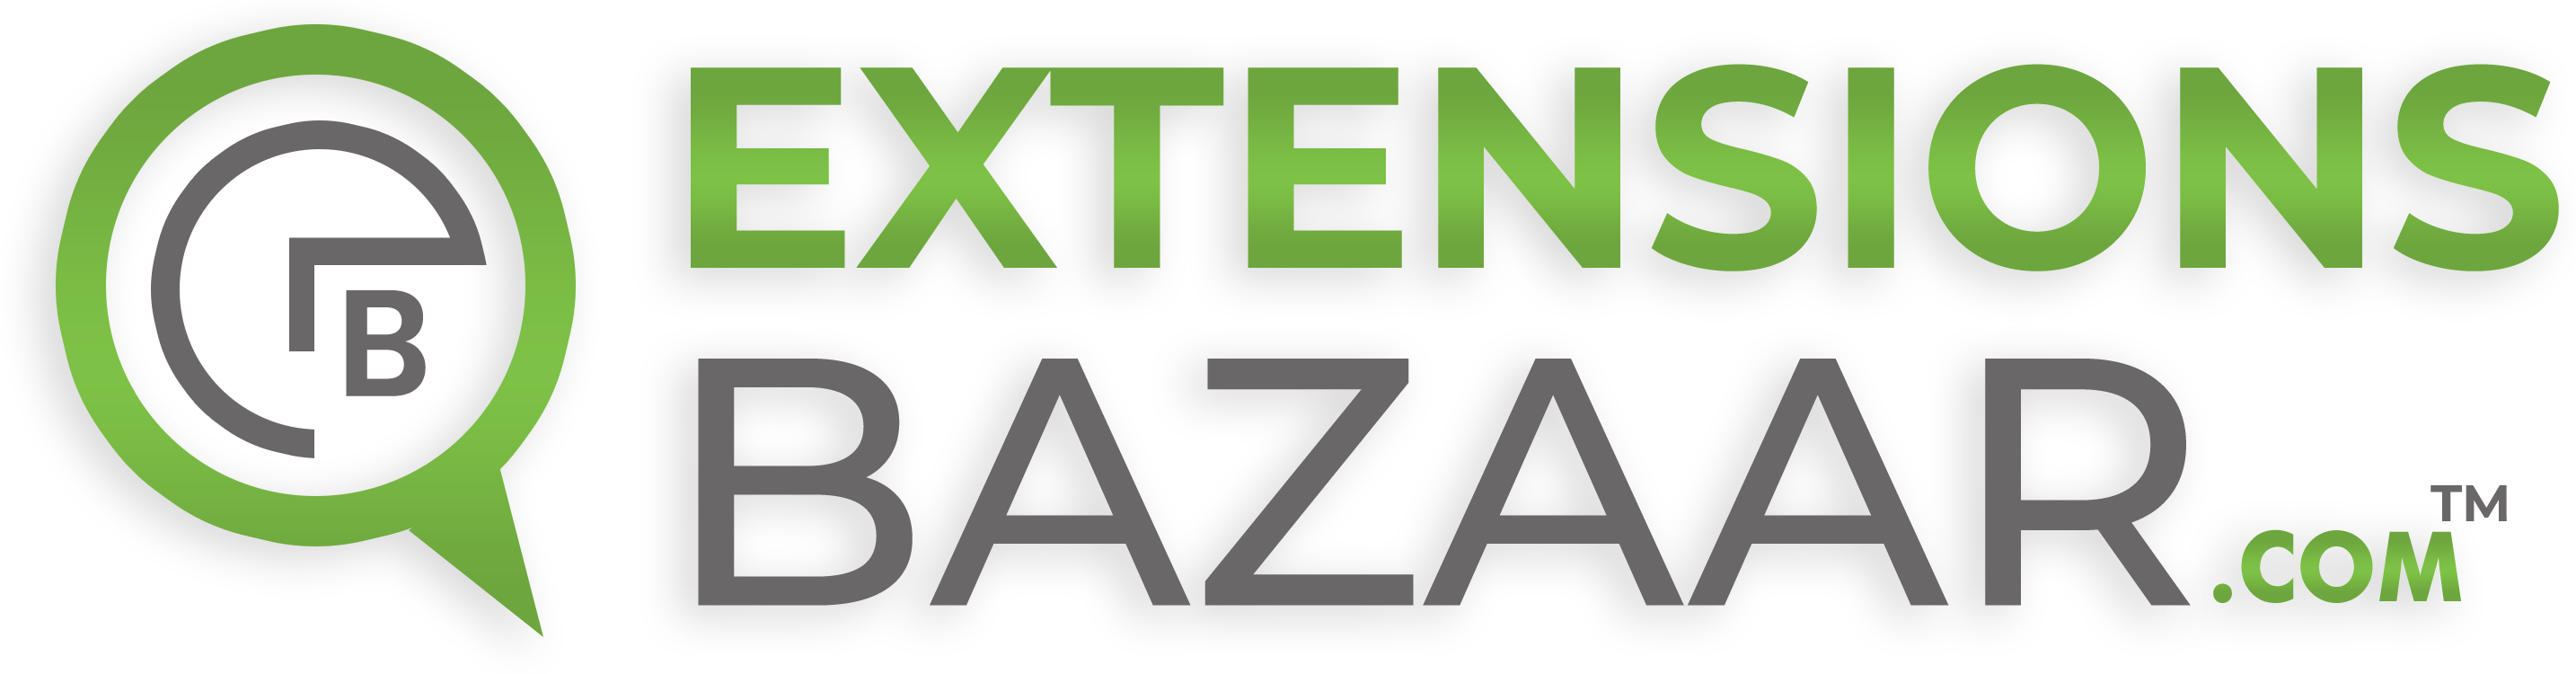 Extensions Bazaar